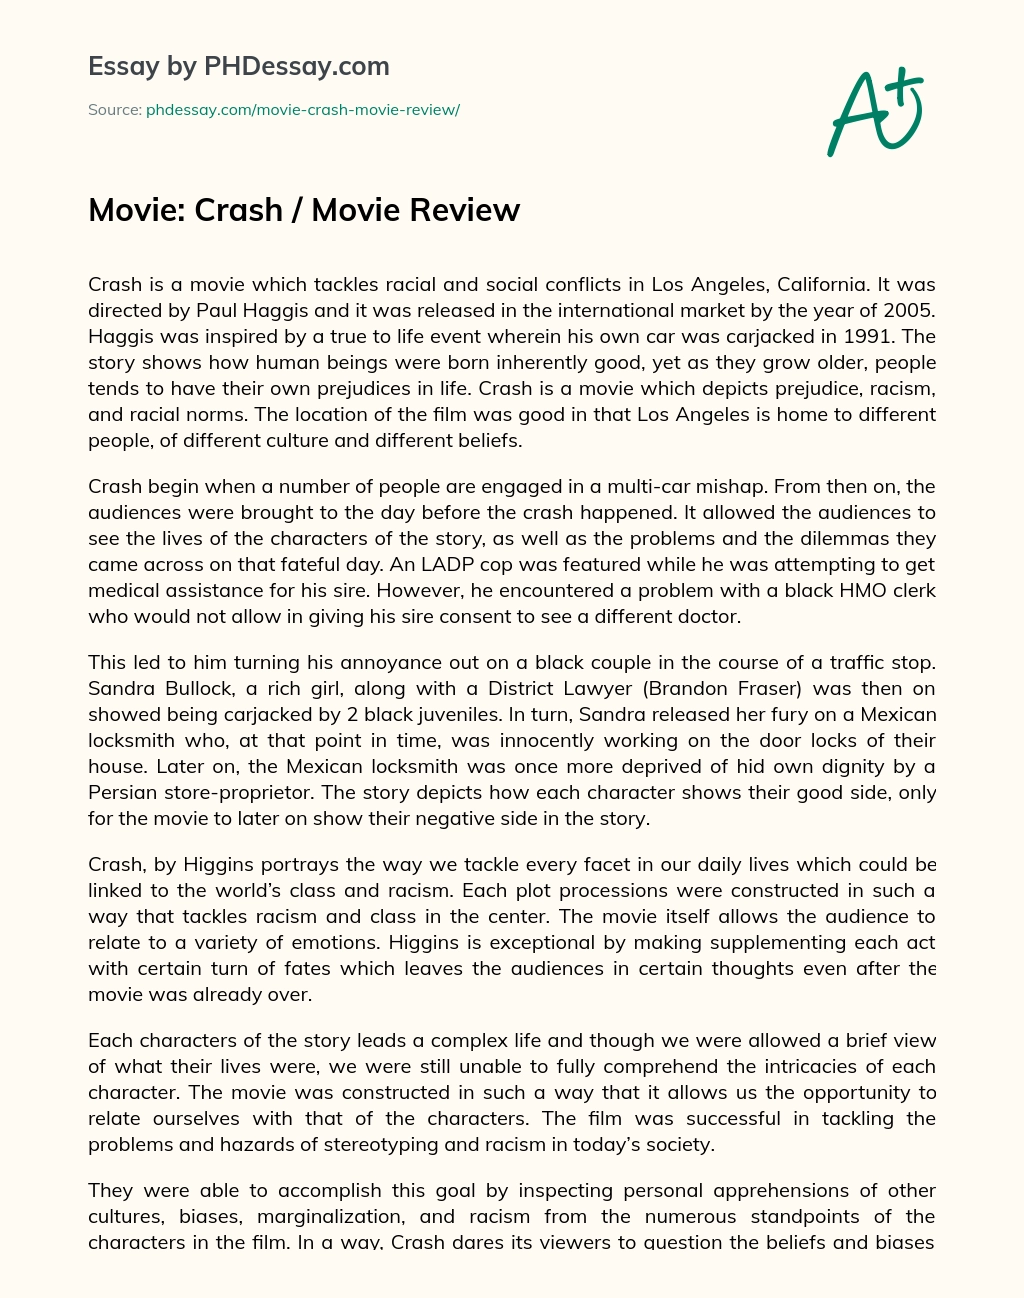 Movie: Crash / Movie Review essay